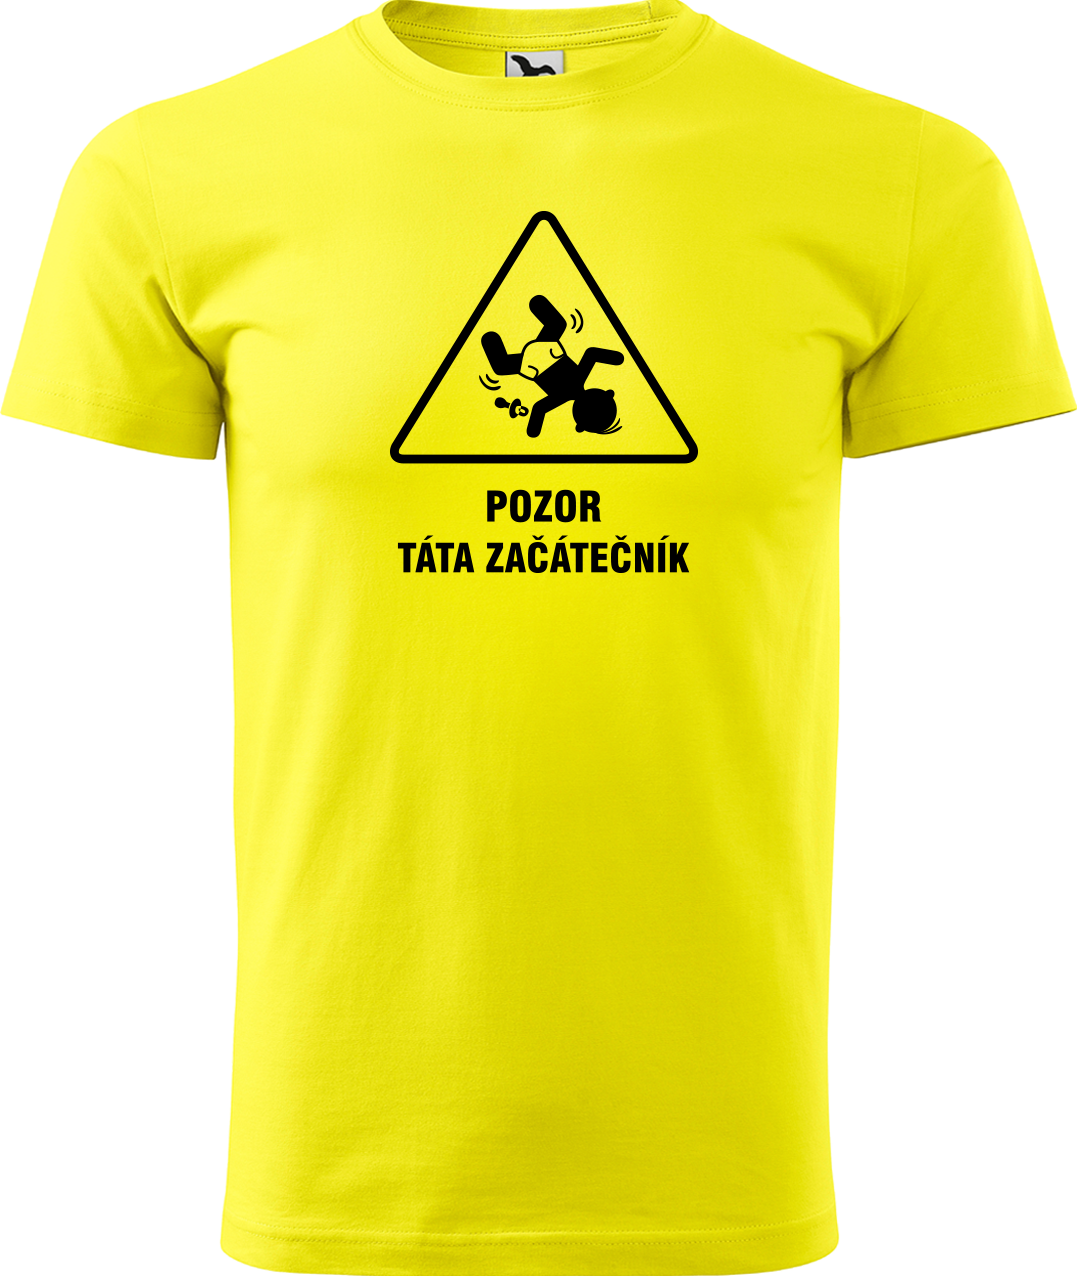 Tričko pro tátu - Pozor táta začátečník Velikost: L, Barva: Žlutá (04)